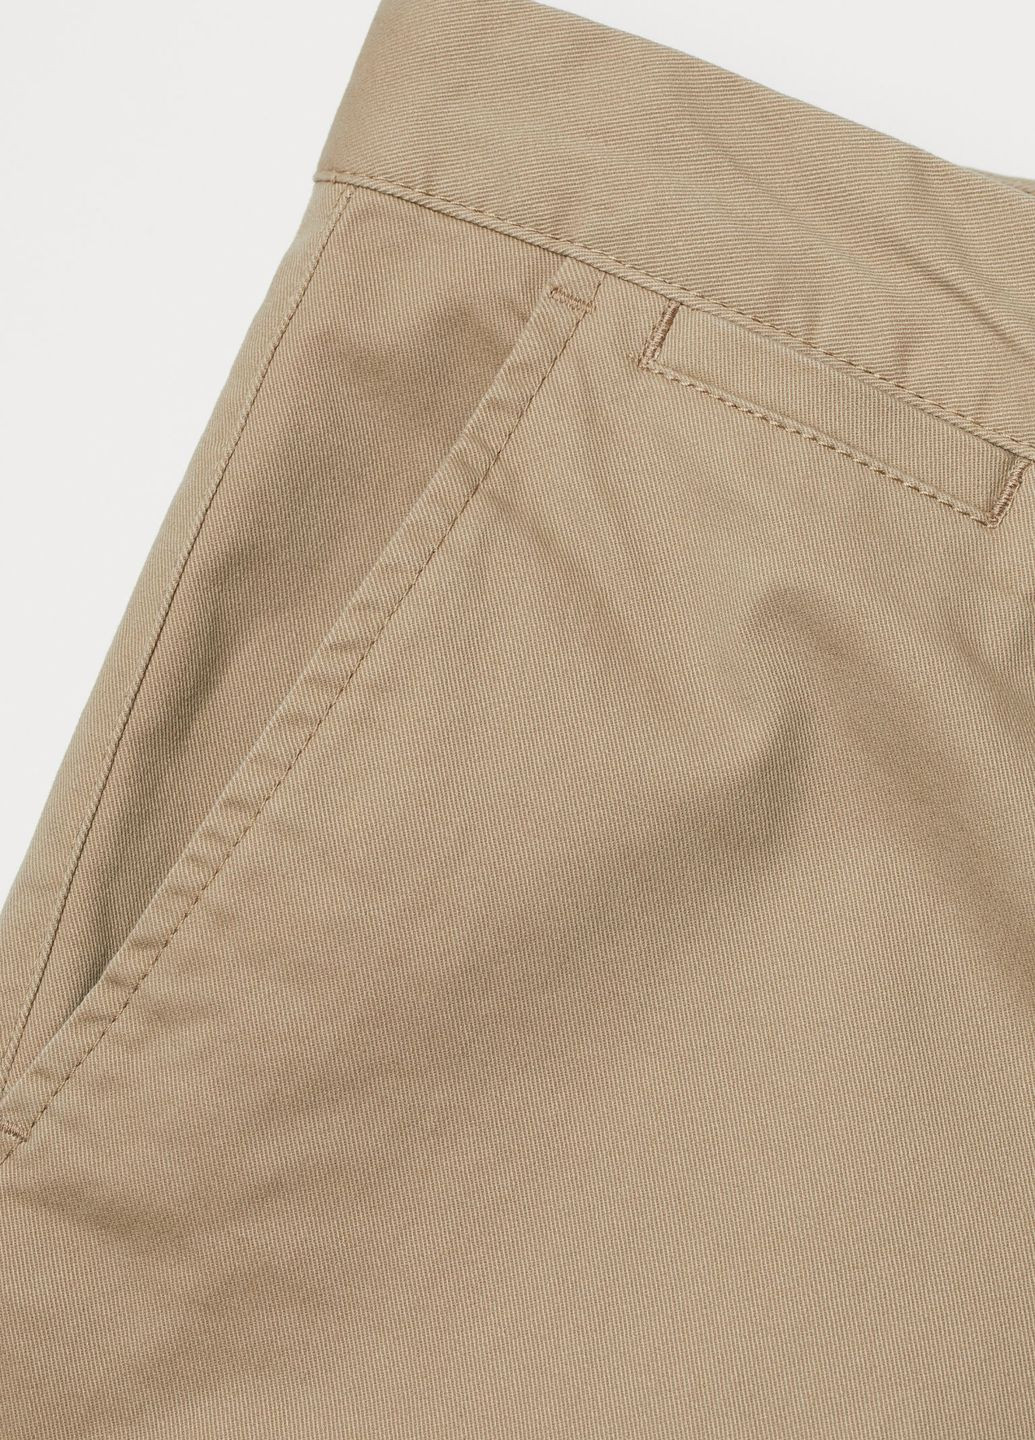 Светло-бежевые повседневный летние брюки H&M